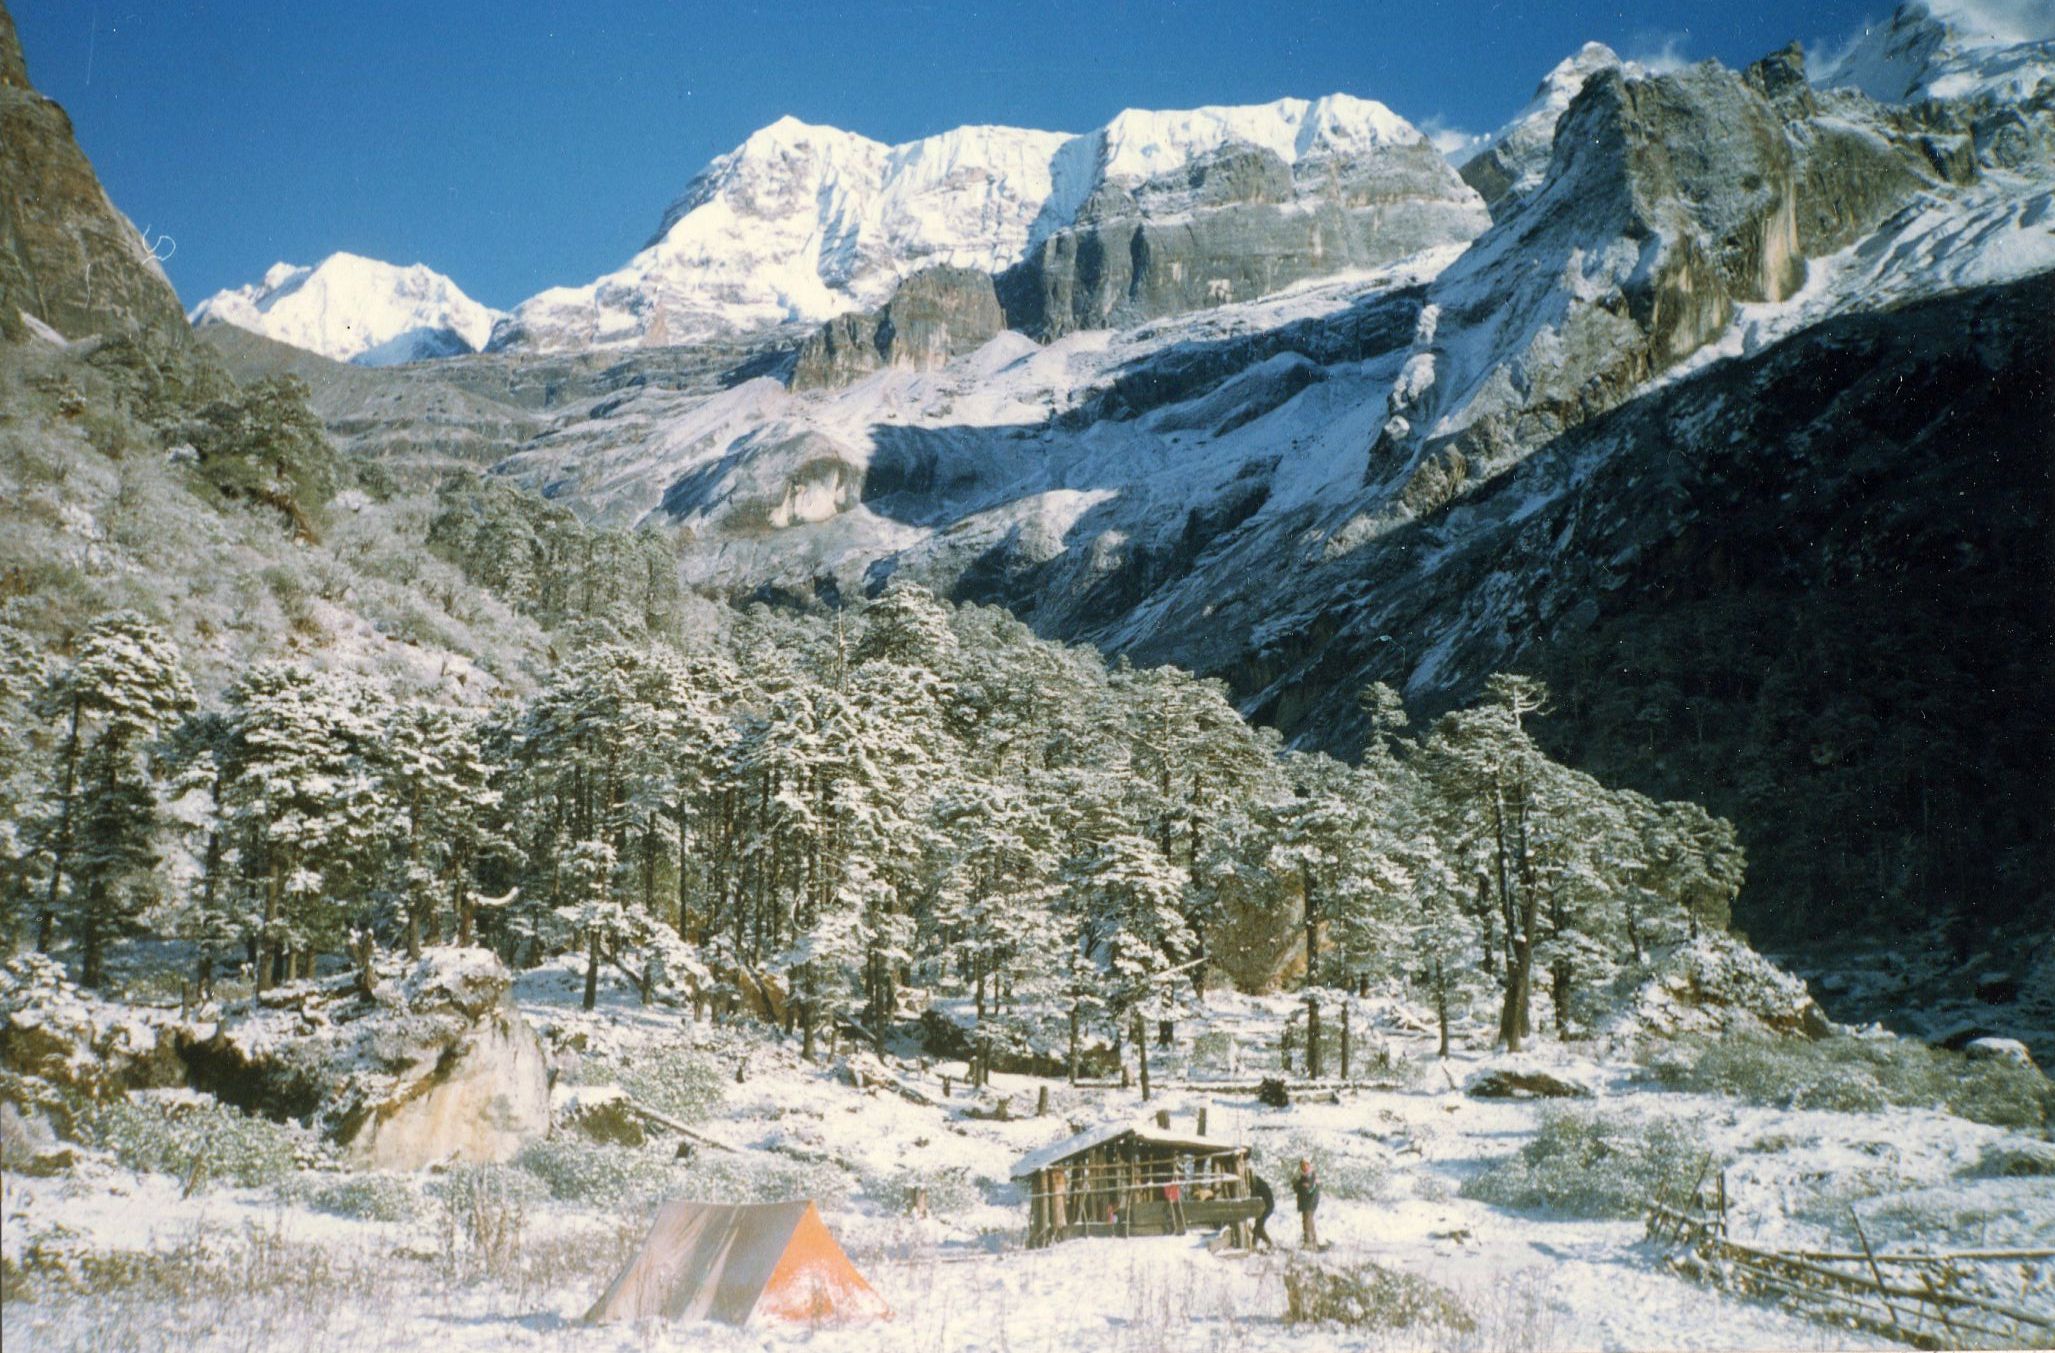 Camp at Nehe Kharka in the Barun Valley